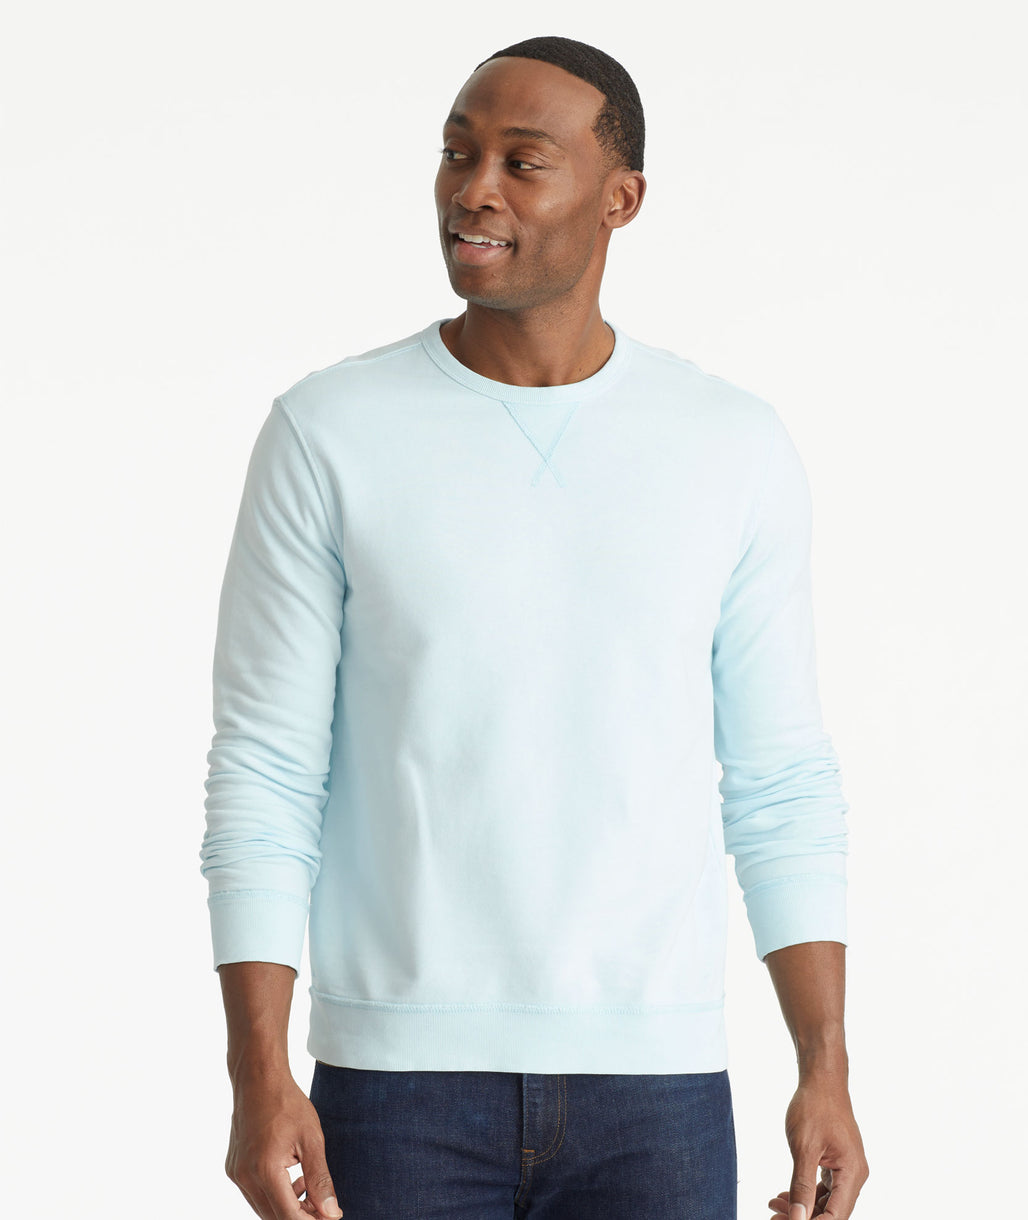 Model wearing an UNTUCKit Bright Blue Mineral Dye Sweatshirt